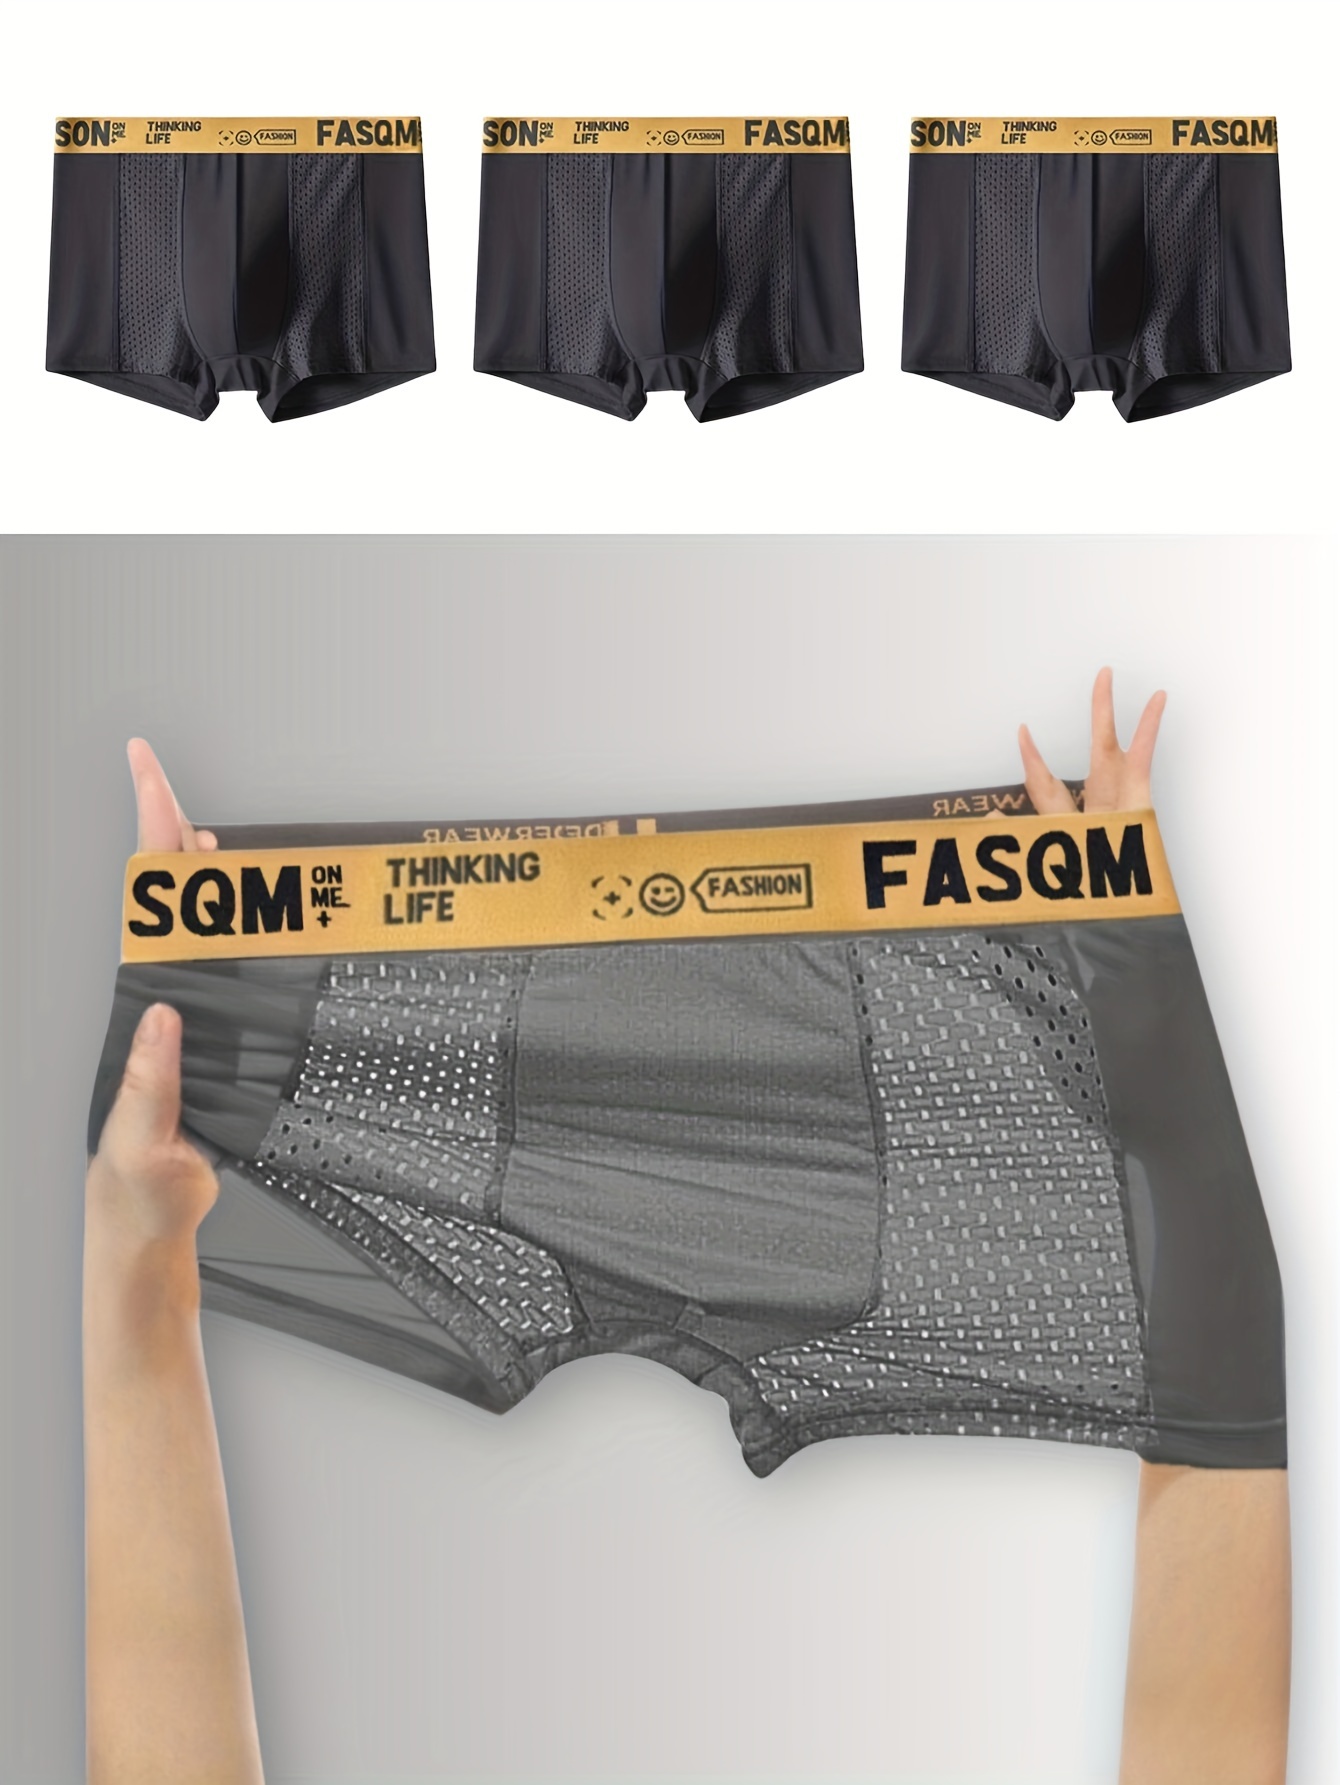 Men's Cooling Underwear & Boxer Briefs